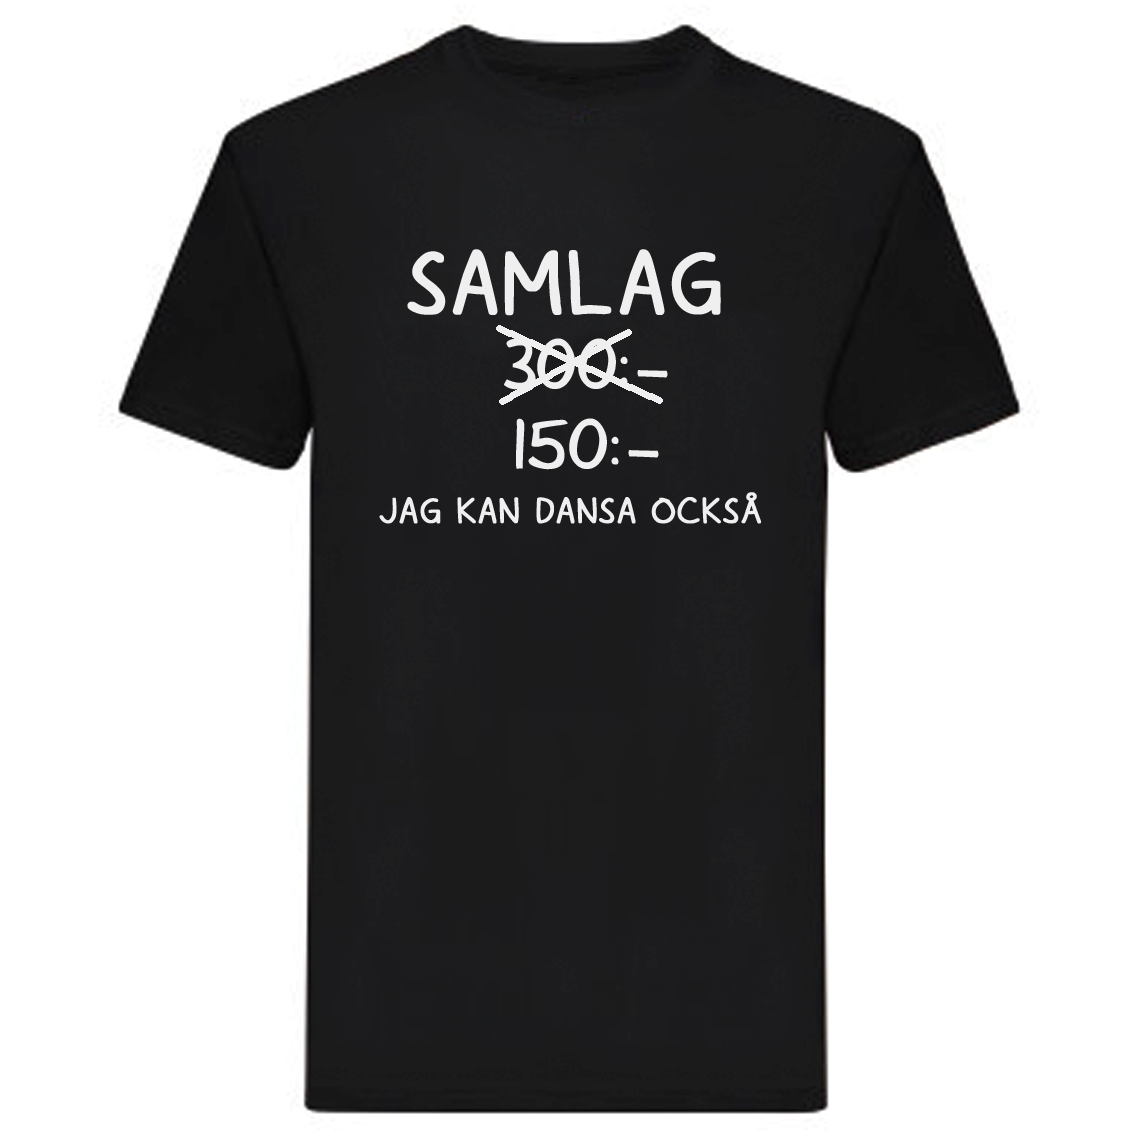 T-Shirt - SAMLAG 300kr, jag kan dansa också!